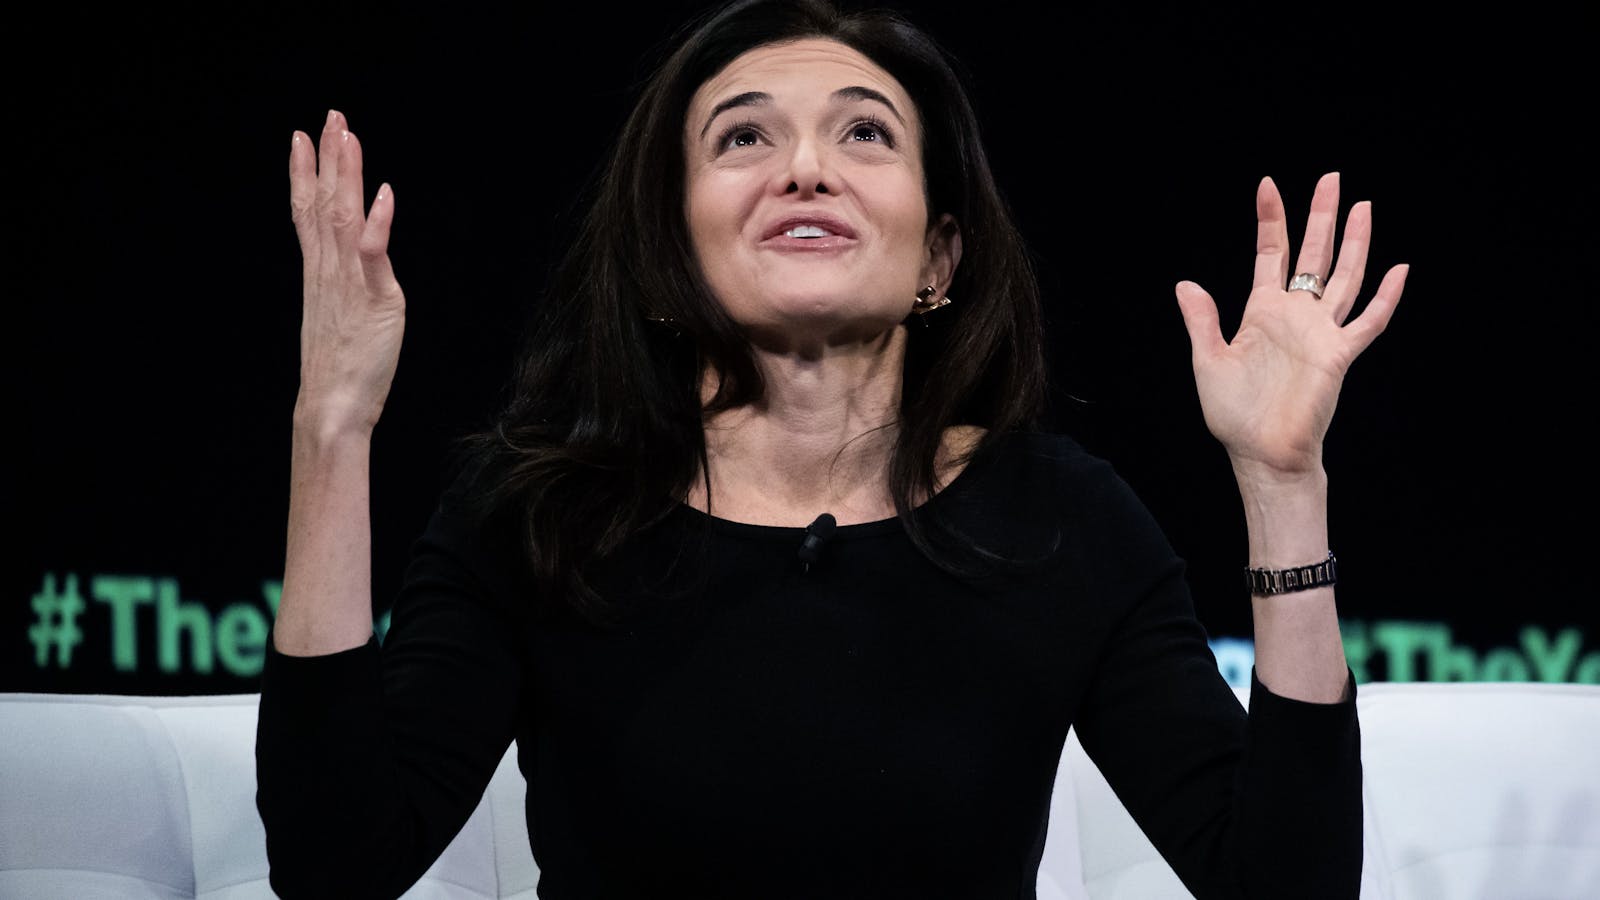 Meta's Sheryl Sandberg. Photo by Bloomberg.